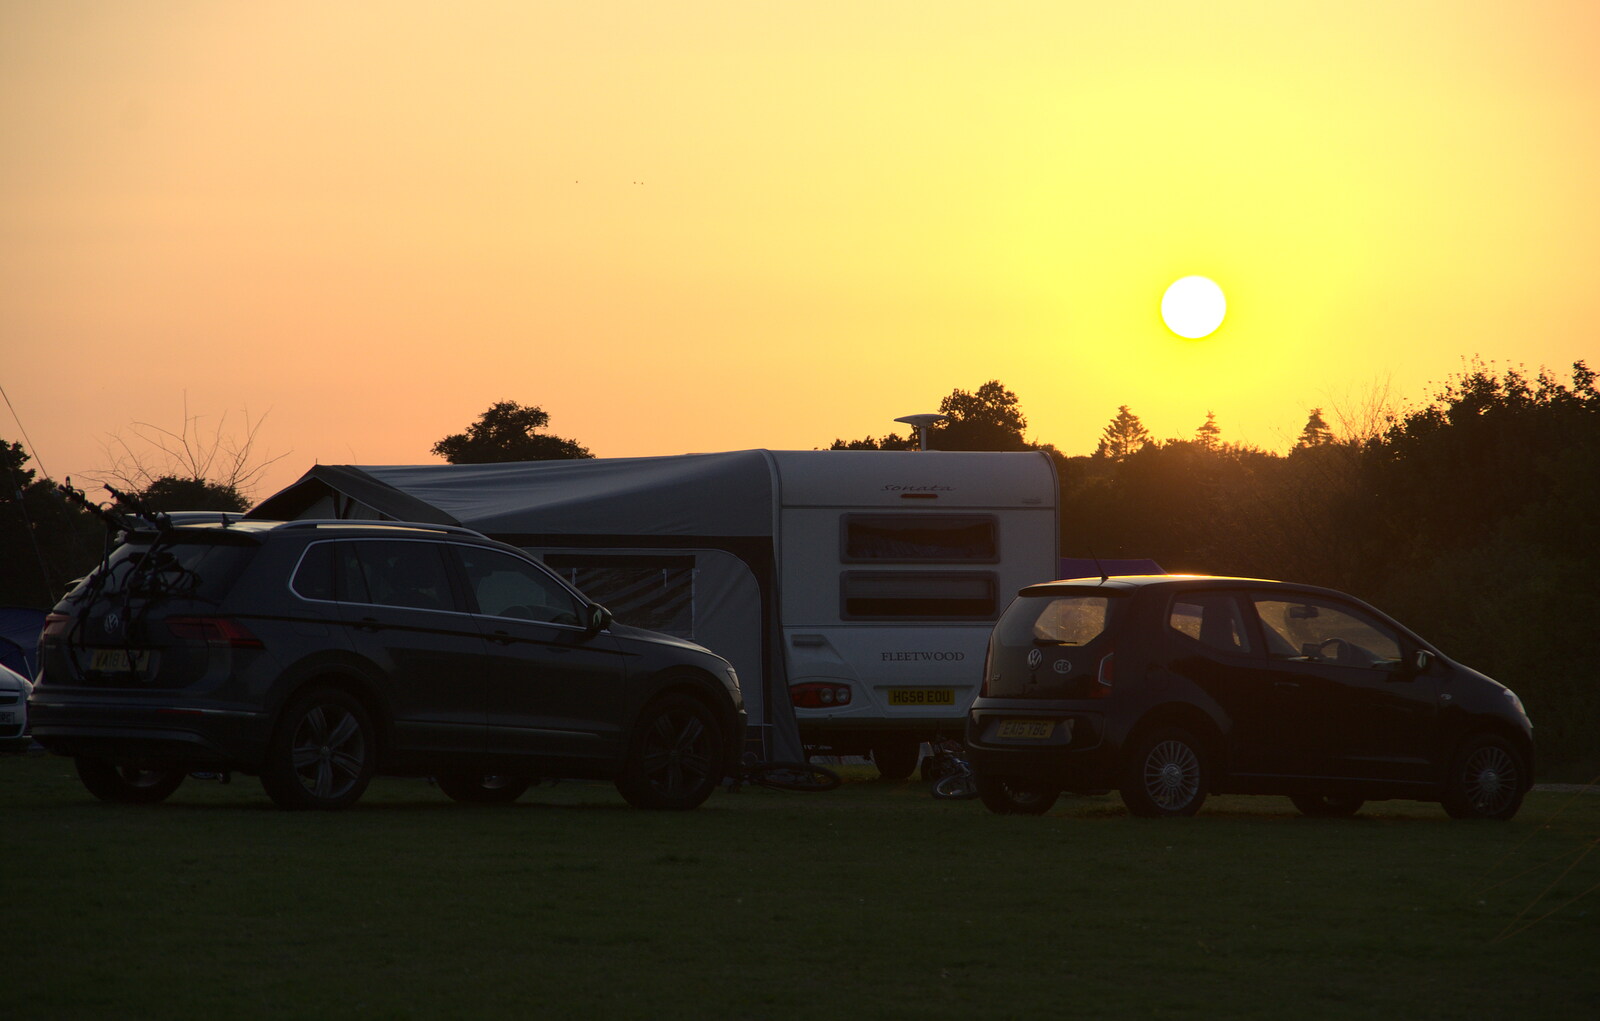 Sunset over a caravan from A Spot of Camping, Alton Water, Stutton, Suffolk - 1st September 2018